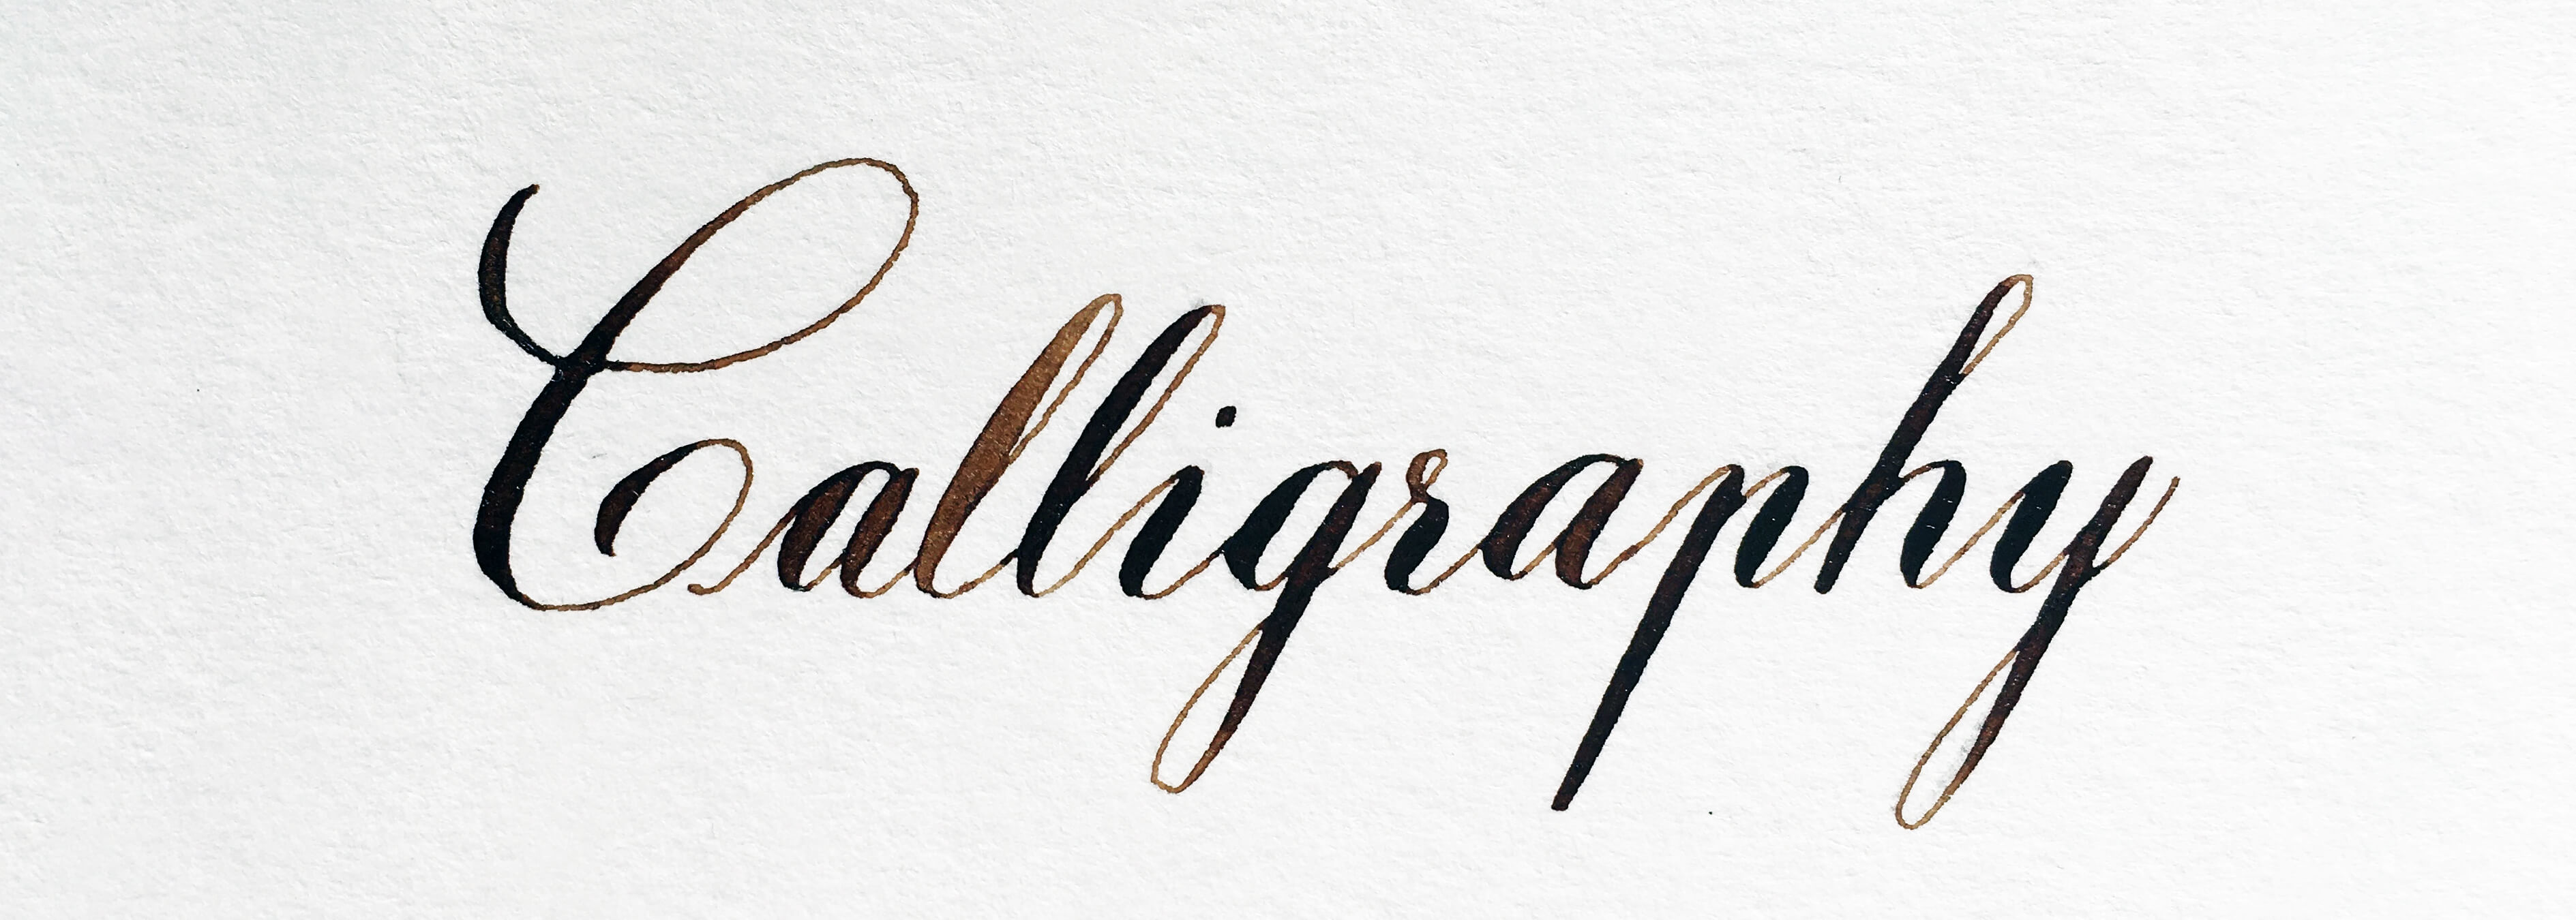 Class Iii English Calligraphy - Calligraphy , HD Wallpaper & Backgrounds